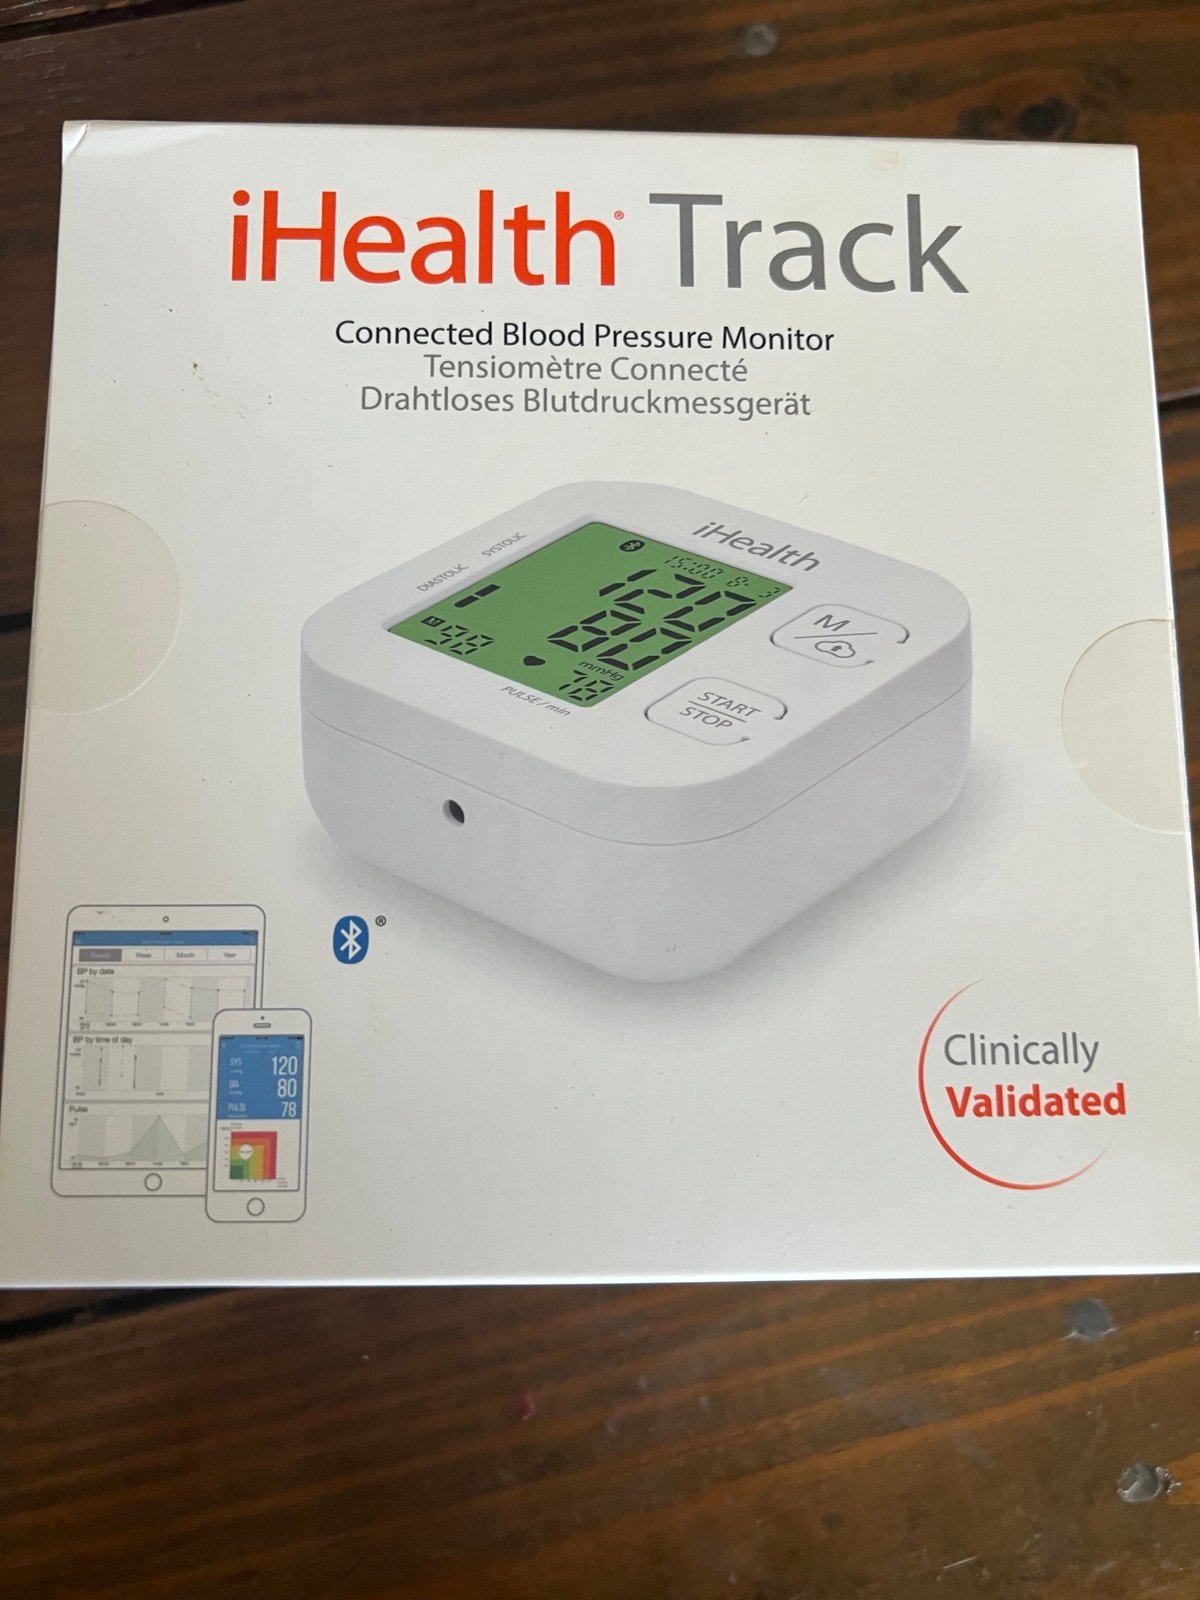 iHealth Track Blood Pressure Monitor gBUhsqt3p